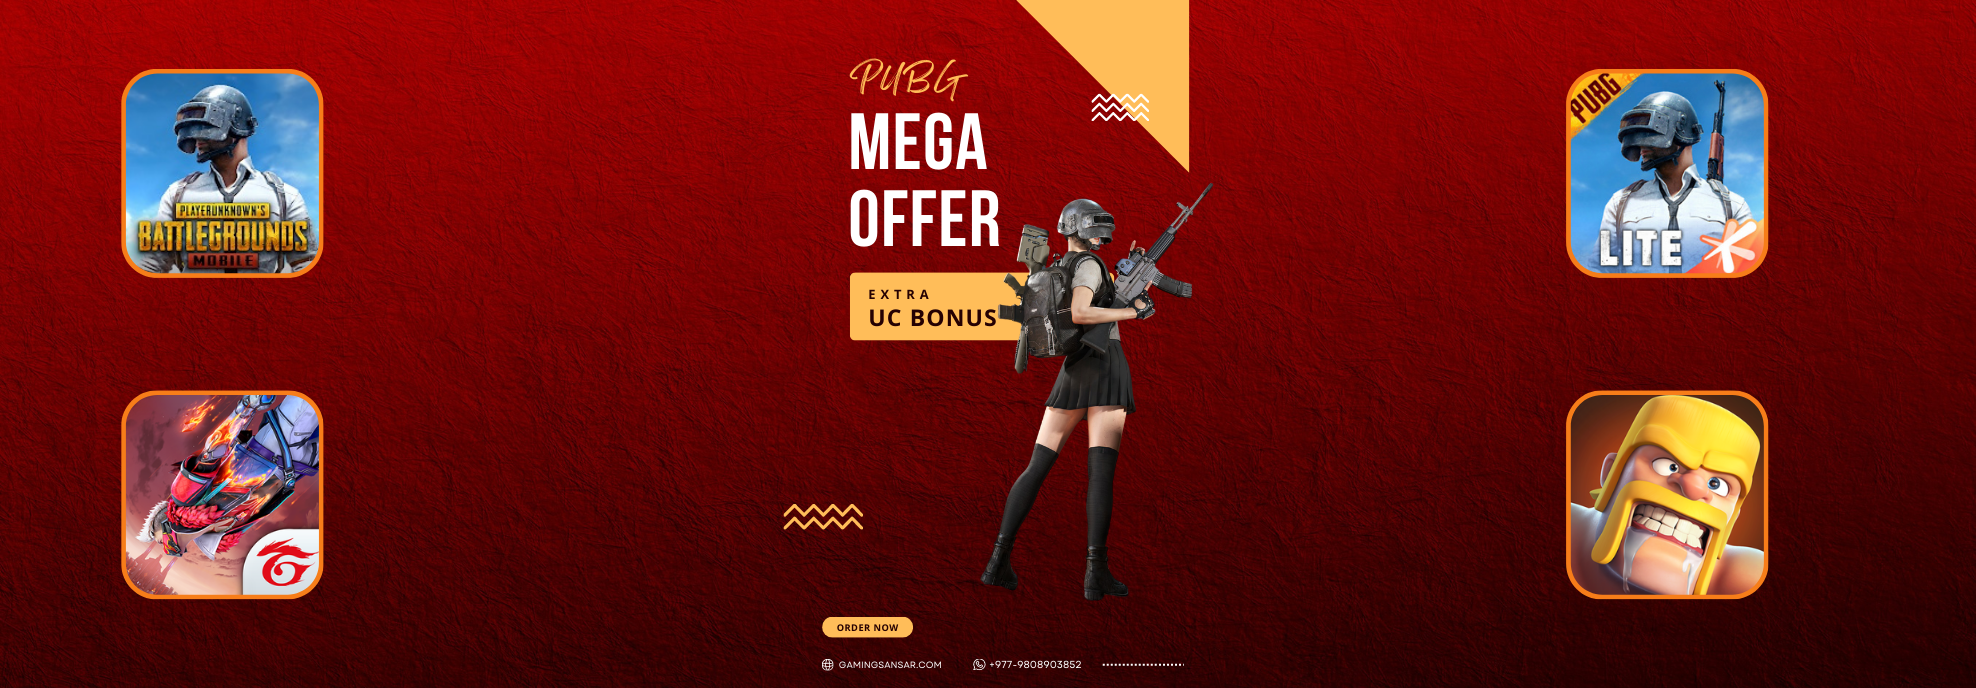 PUBG Mega Offer